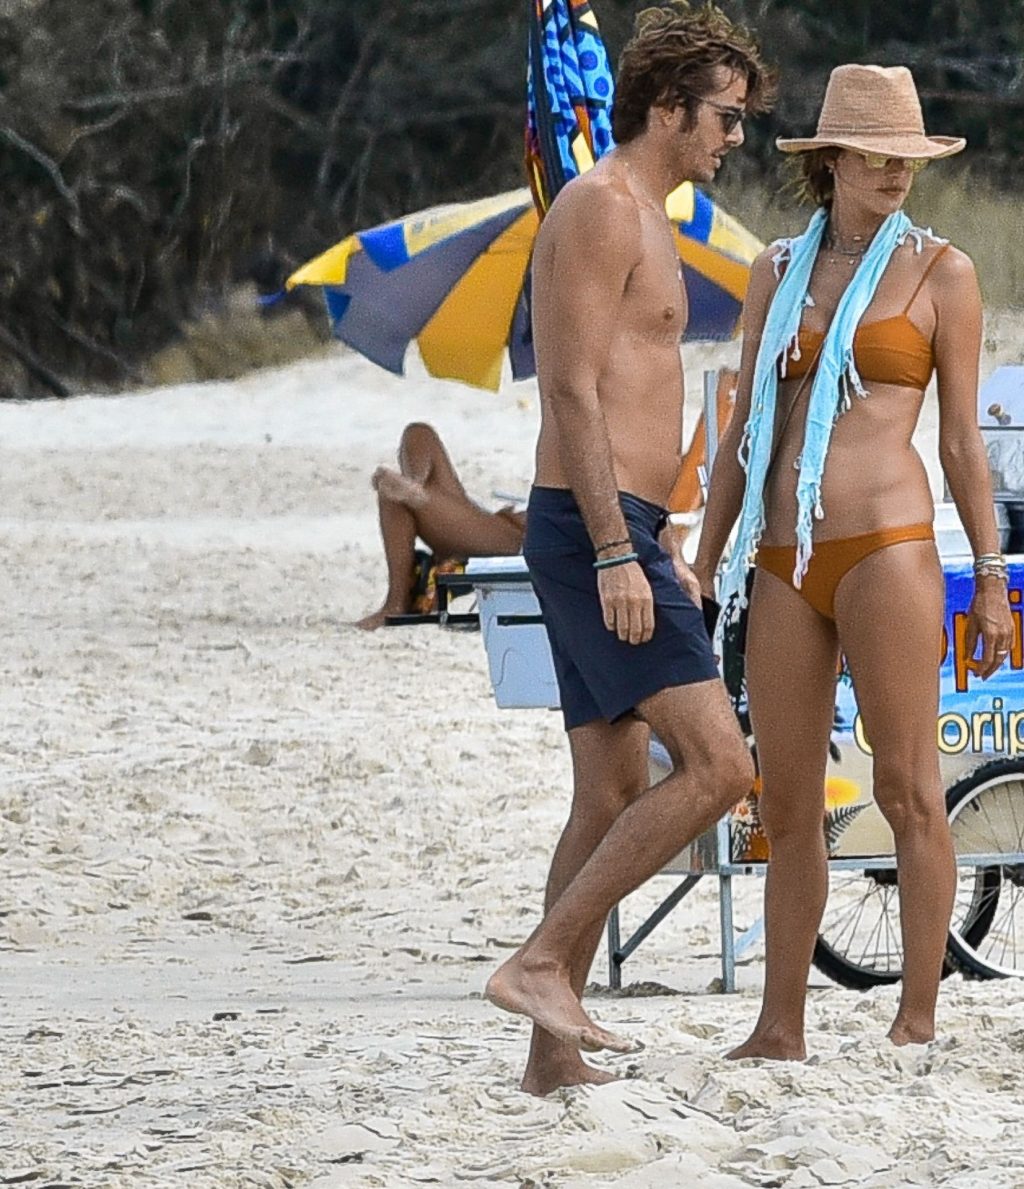 Alessandra Ambrosio Parades in a Bikini as She Enjoys Brazilian Vacation (39 Photos)